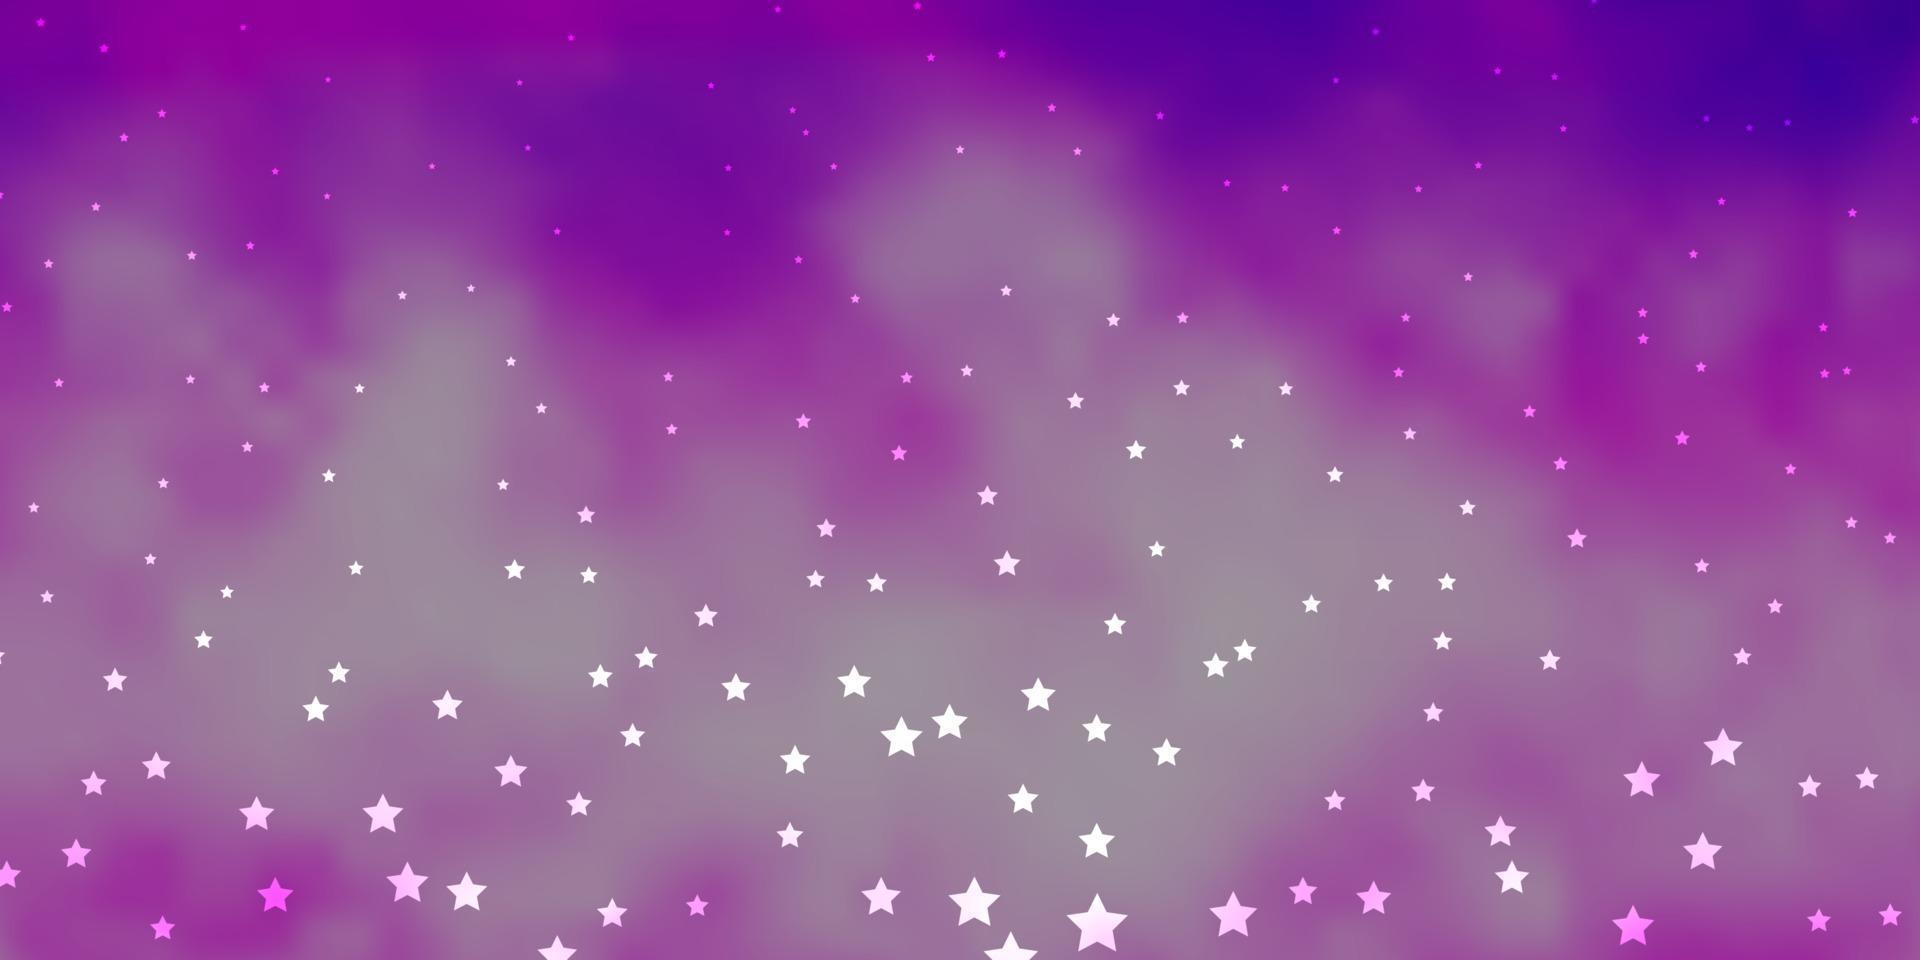 layout de vetor roxo escuro, rosa com estrelas brilhantes.